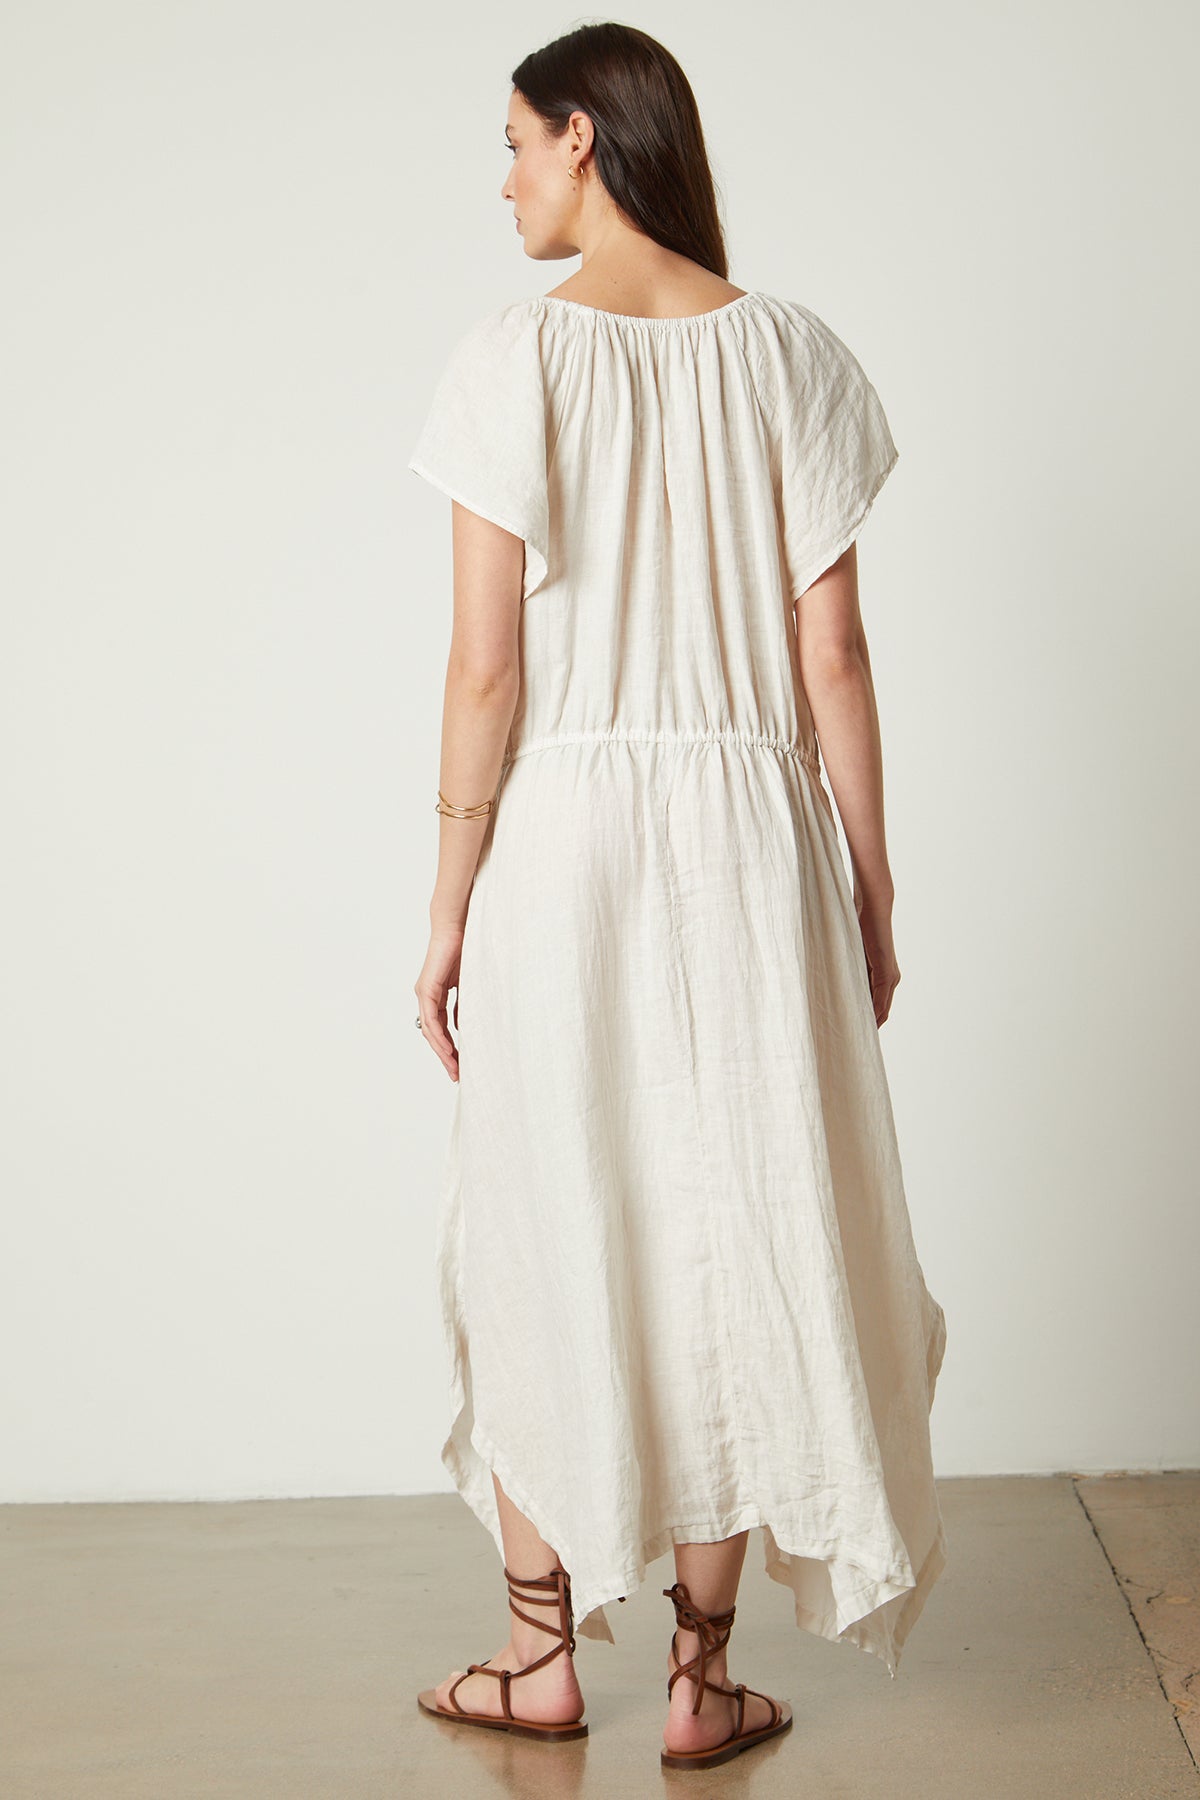 Debbie Linen Dress in cream full length back-26143134482625